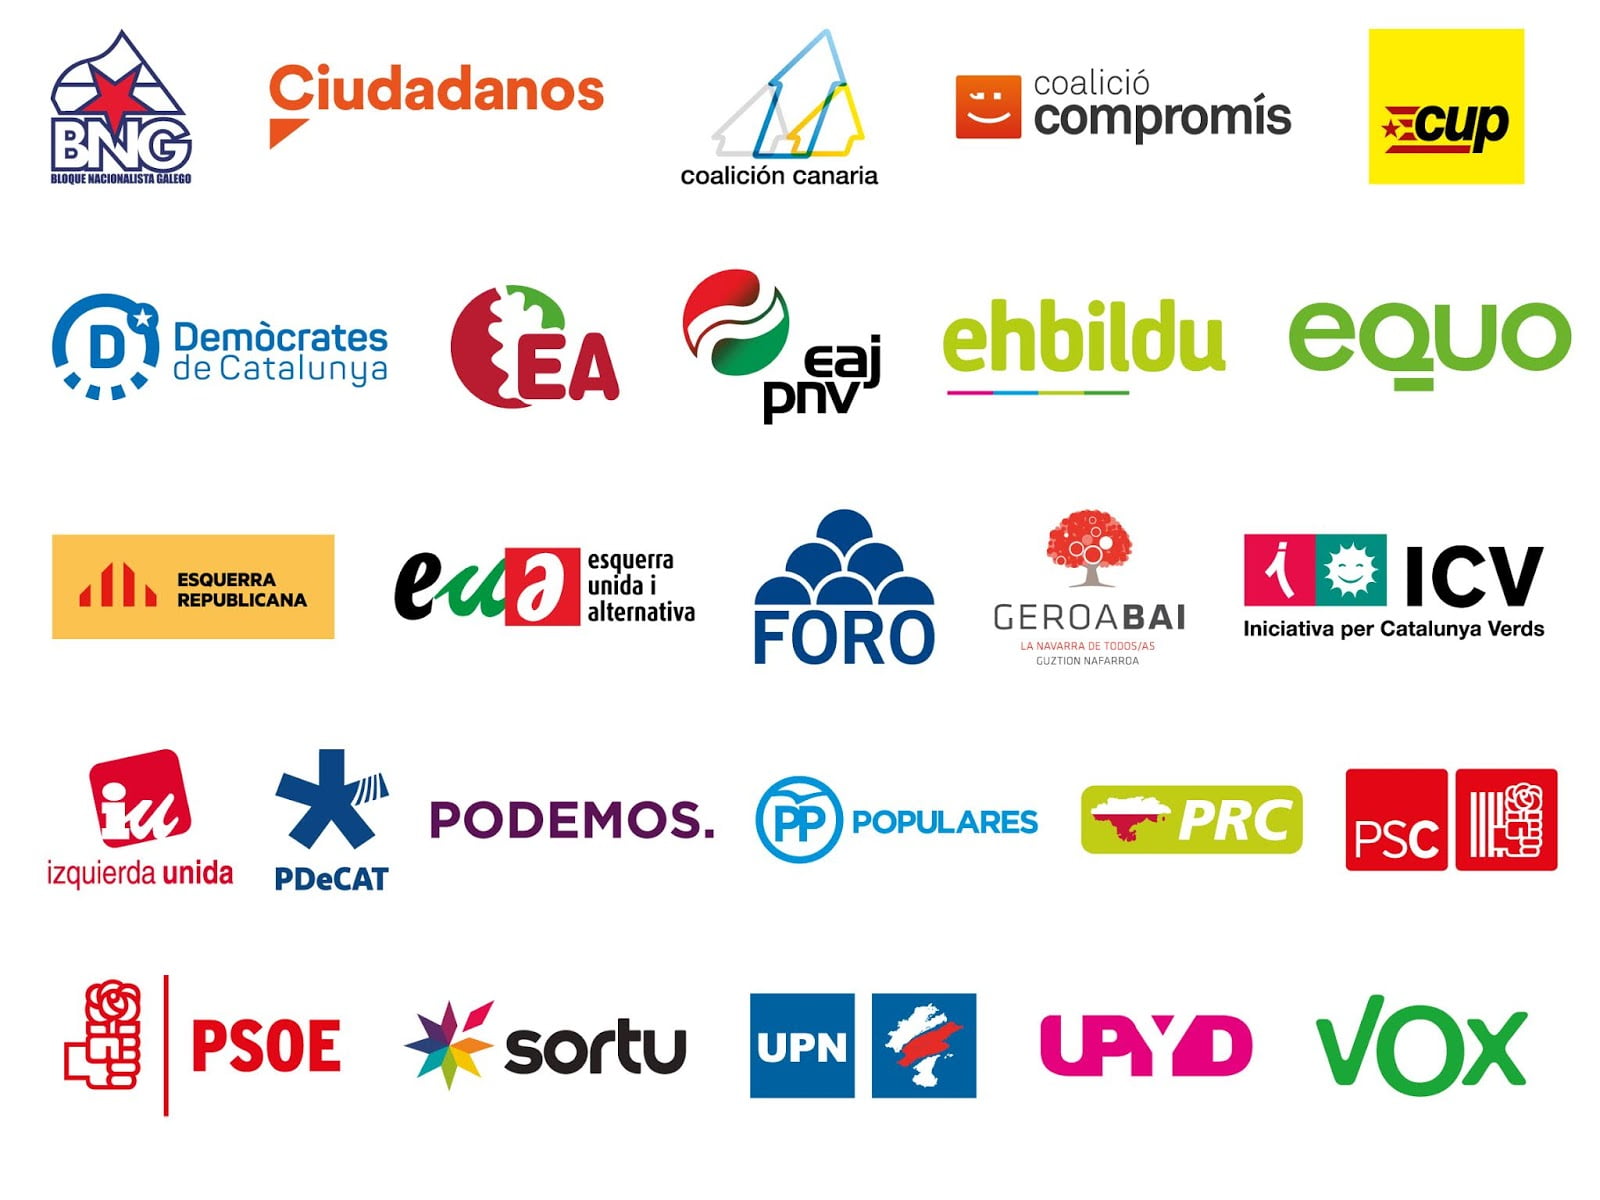 4-M: Los 17 partidos «pequeños» que compiten en la Comunidad de Madrid con los 6 «grandes»